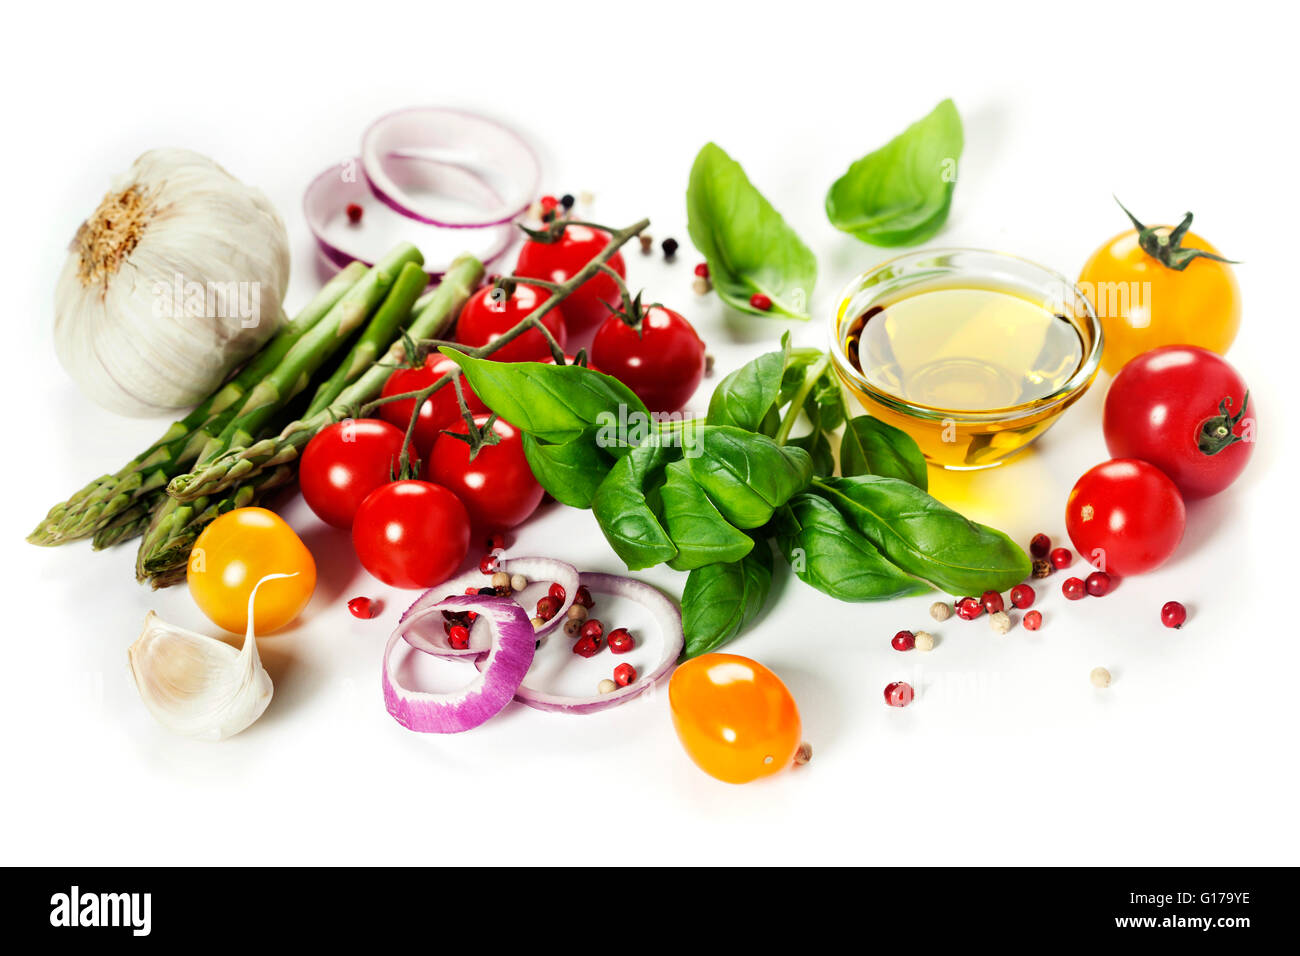 Frisches Gemüse auf weißem Hintergrund - gesundes Essen, vegetarisch oder Cooking Konzept Stockfoto